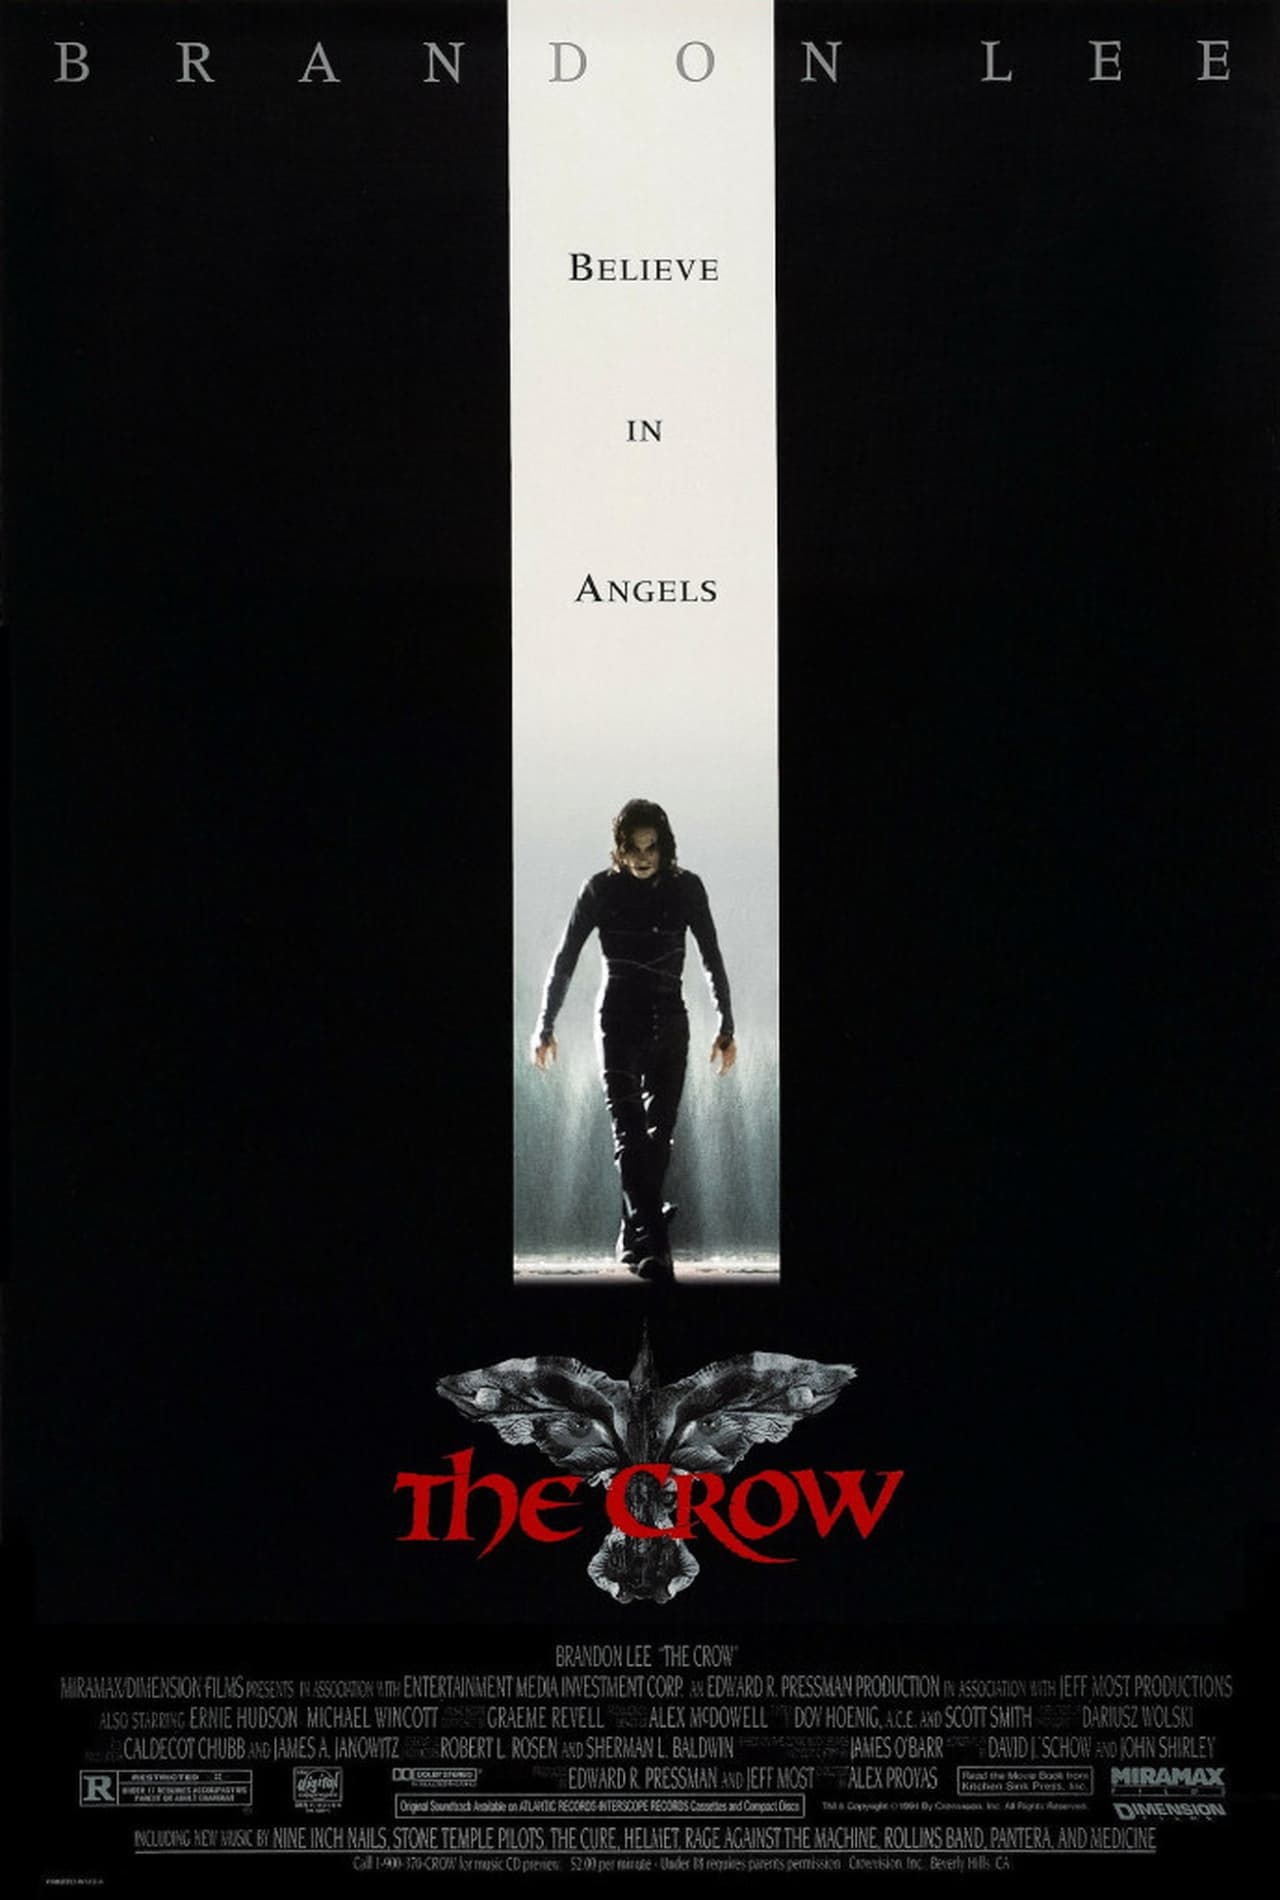 EN - The Crow 4K (1994)